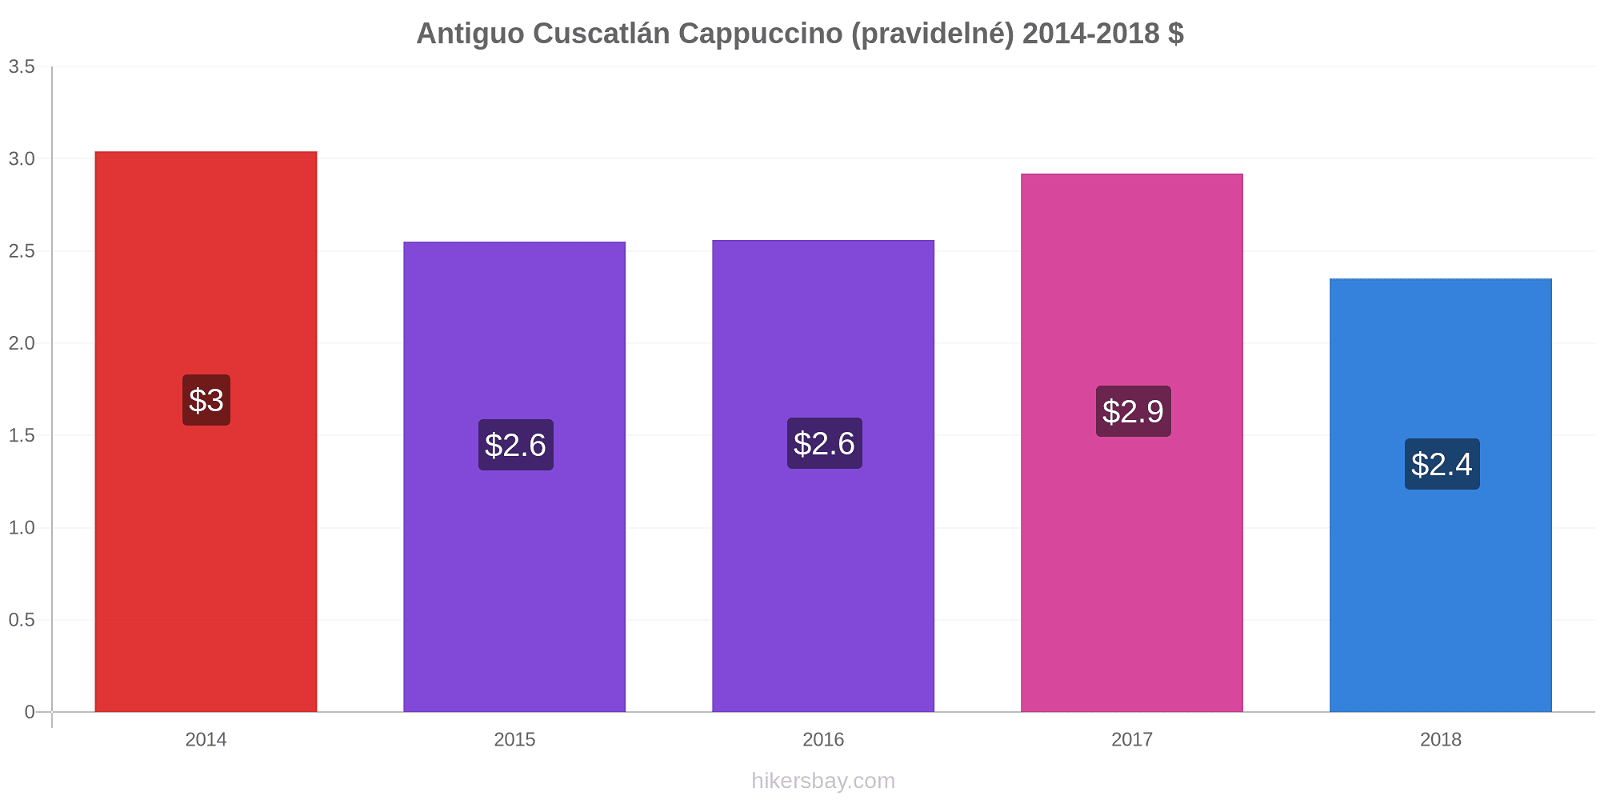 Antiguo Cuscatlán změny cen Cappuccino (pravidelné) hikersbay.com